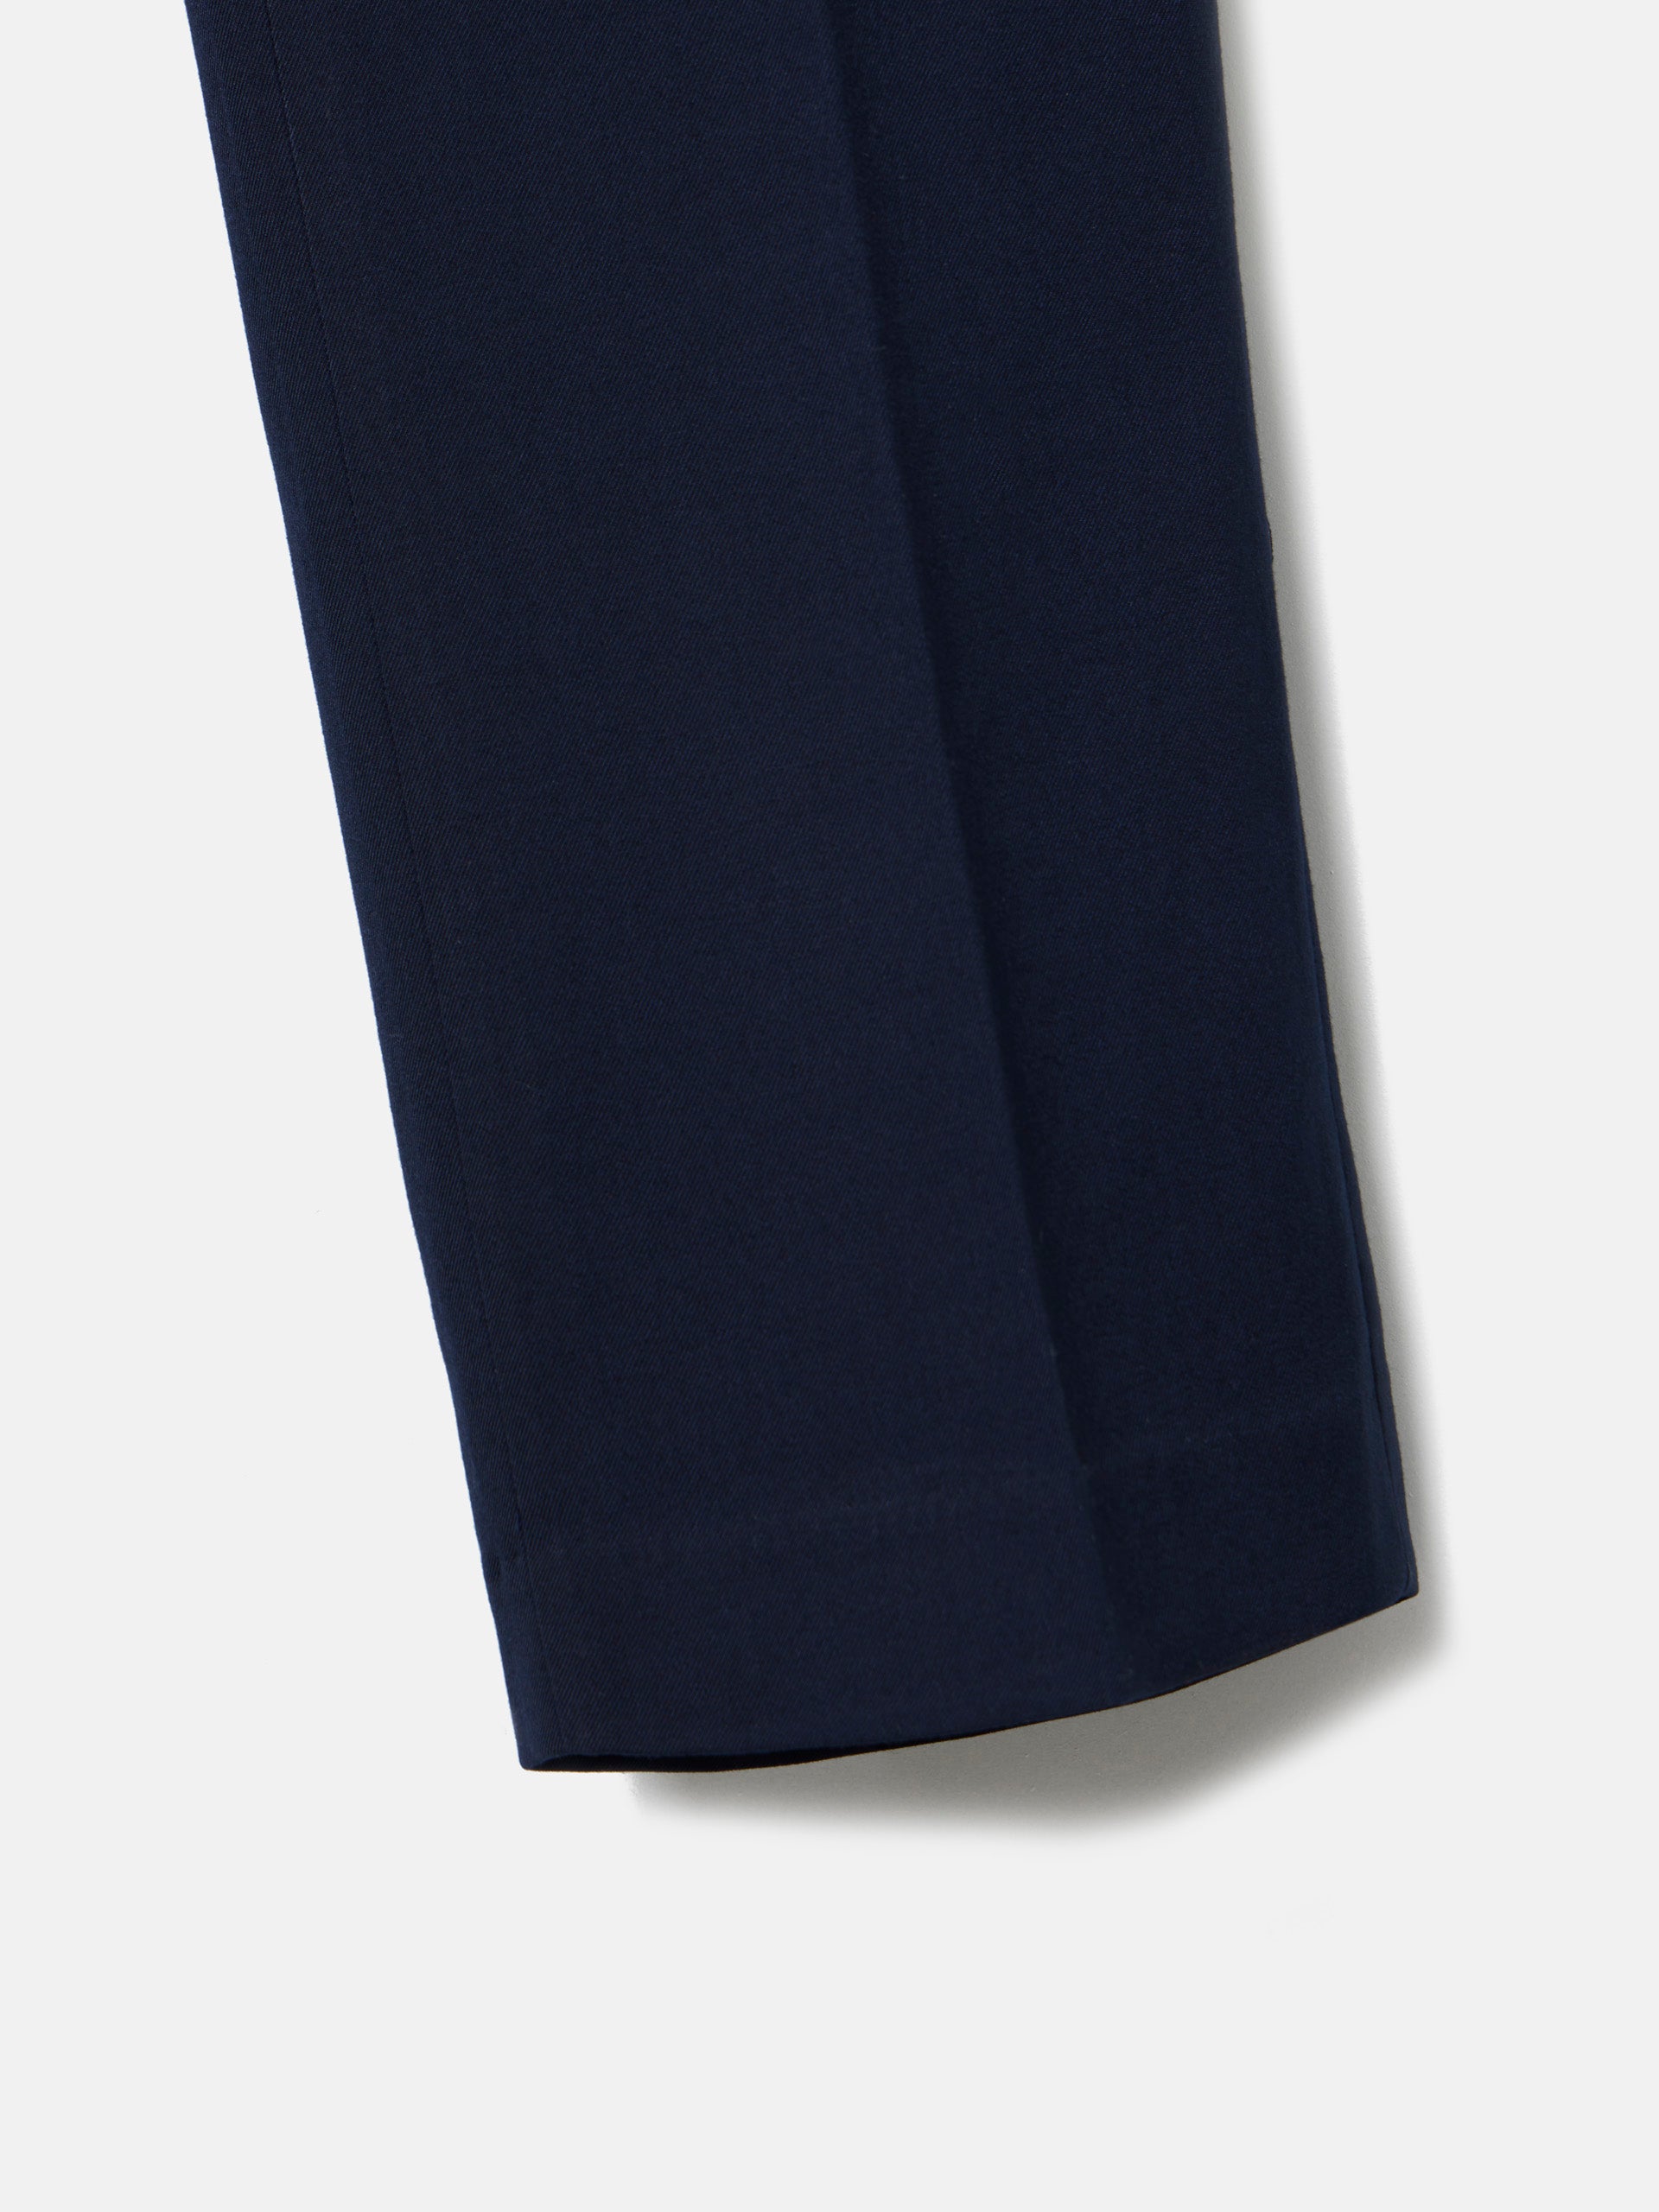 Navy blue essential suit pants